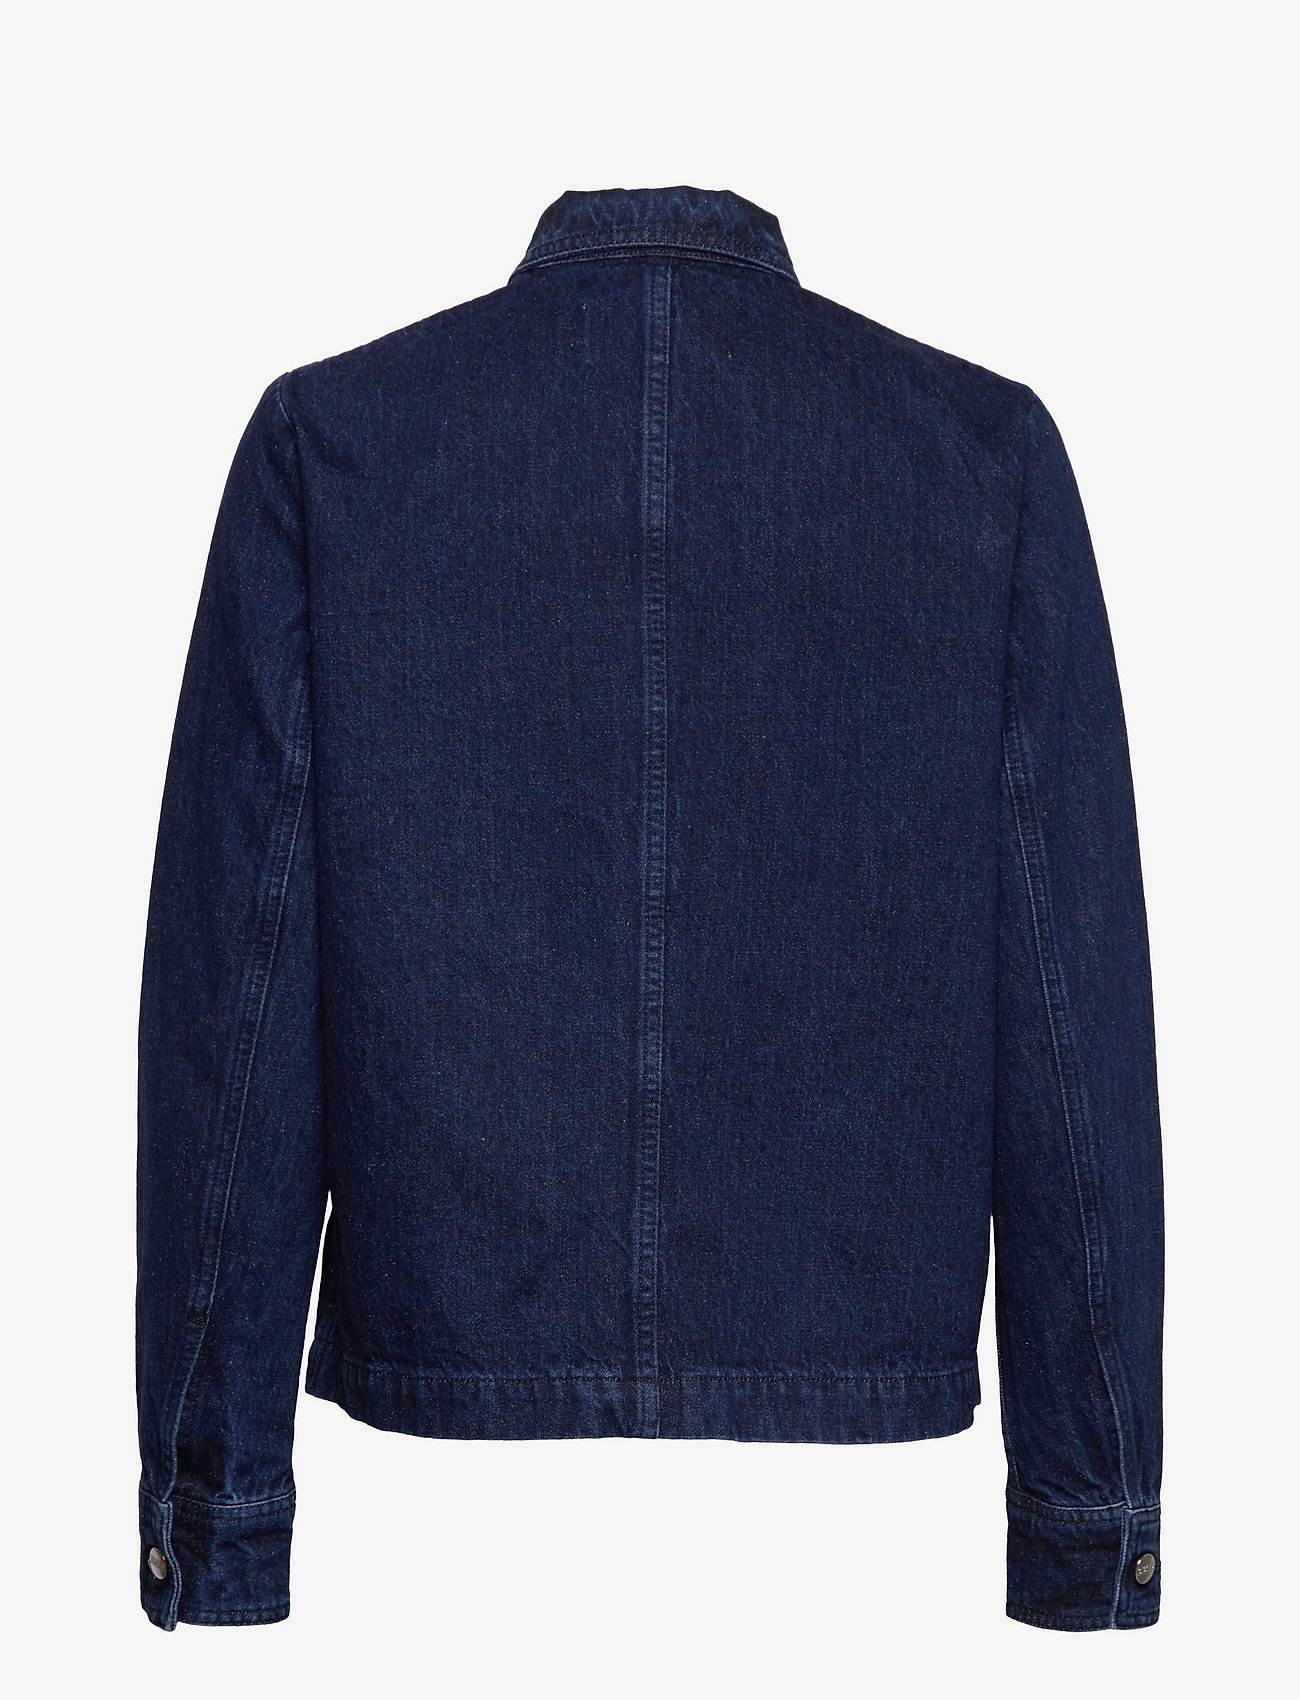 Closed - womens jacket - vestes en jean non doublées - dark blue - 2